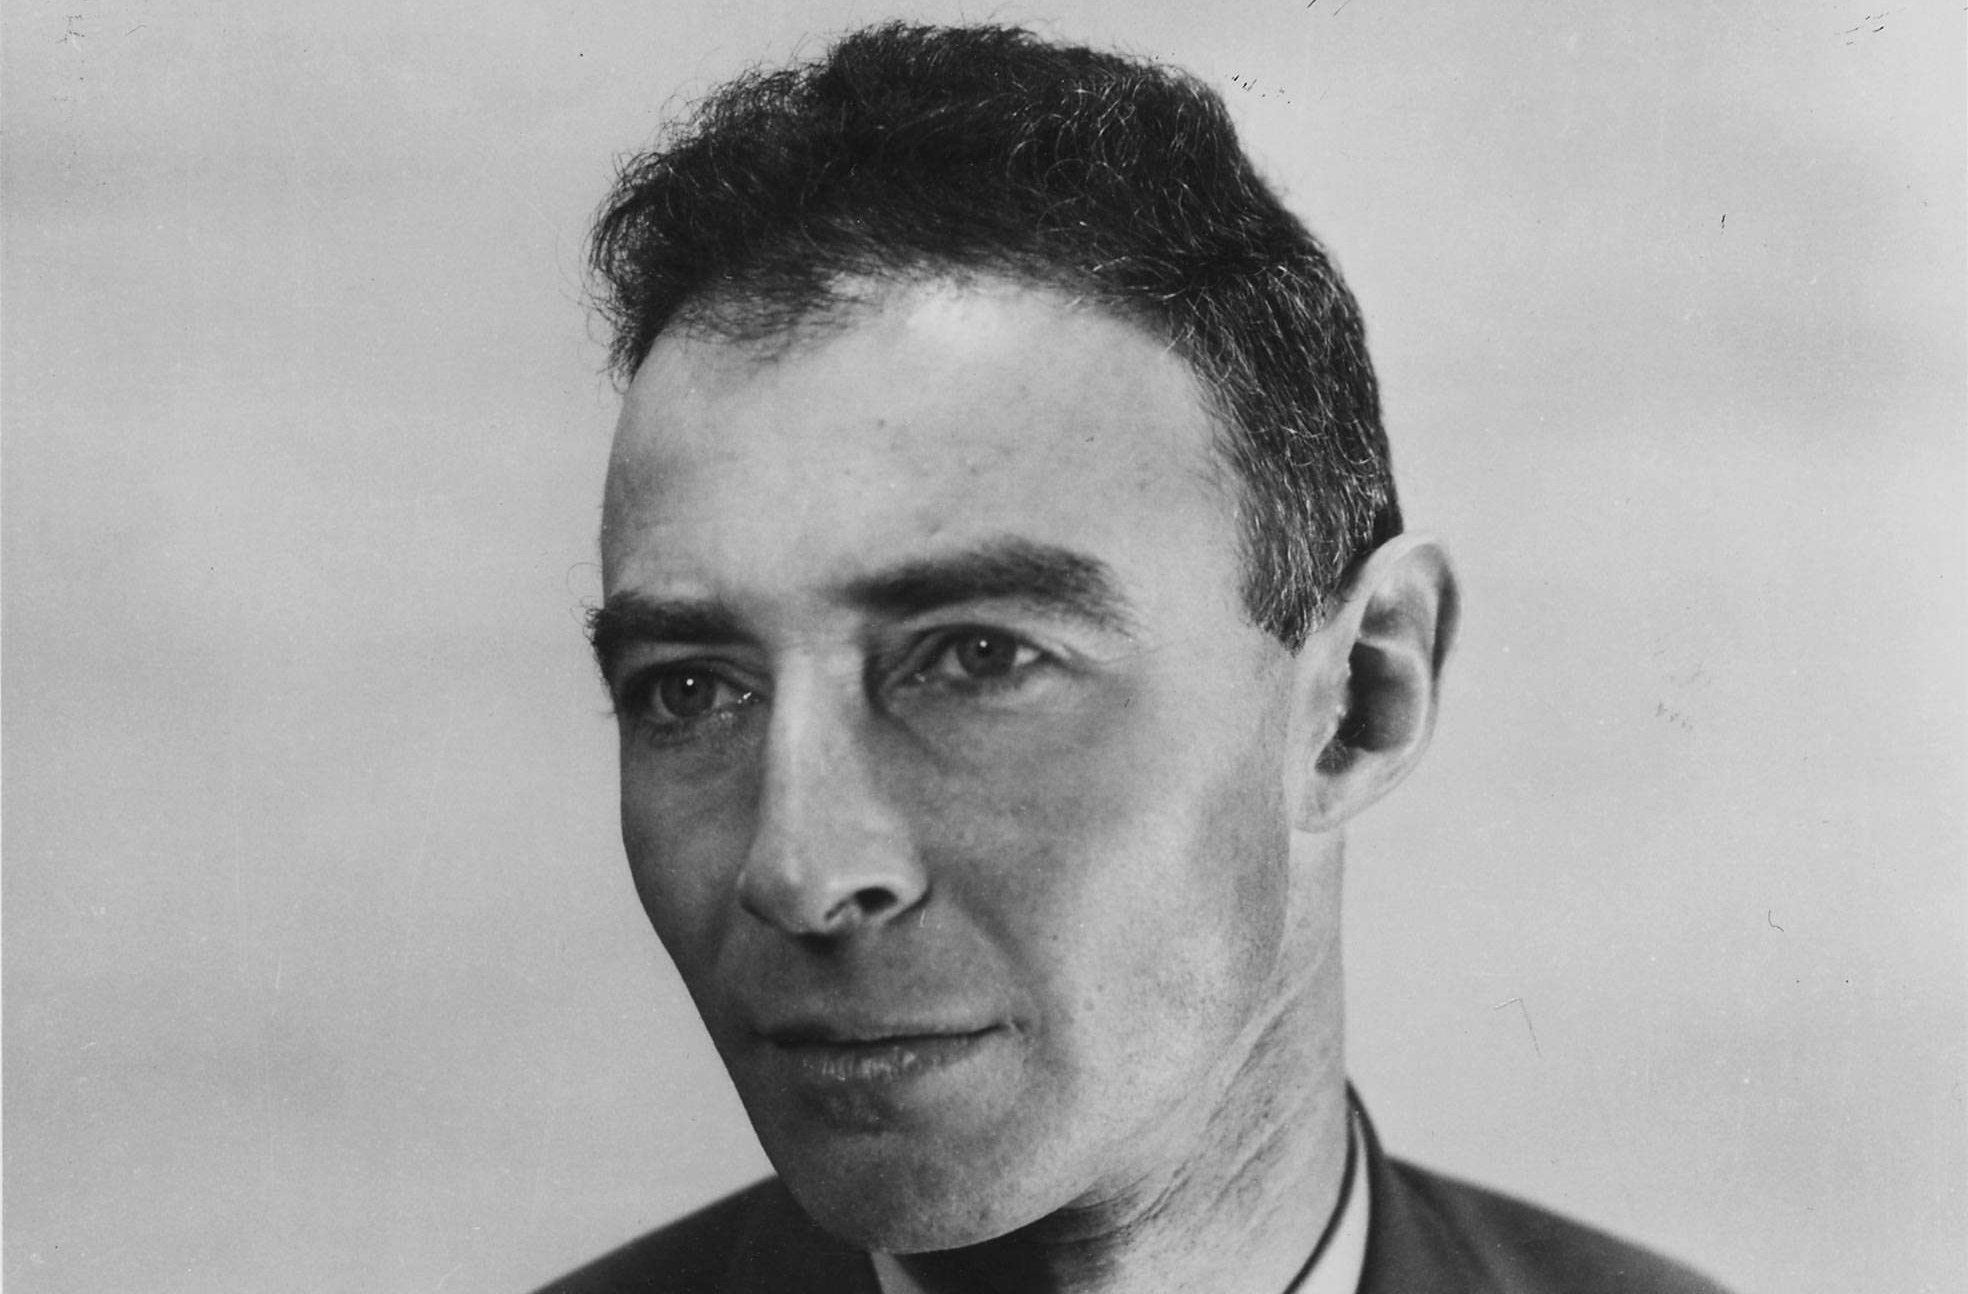 Dr. J. Robert Oppenheimer